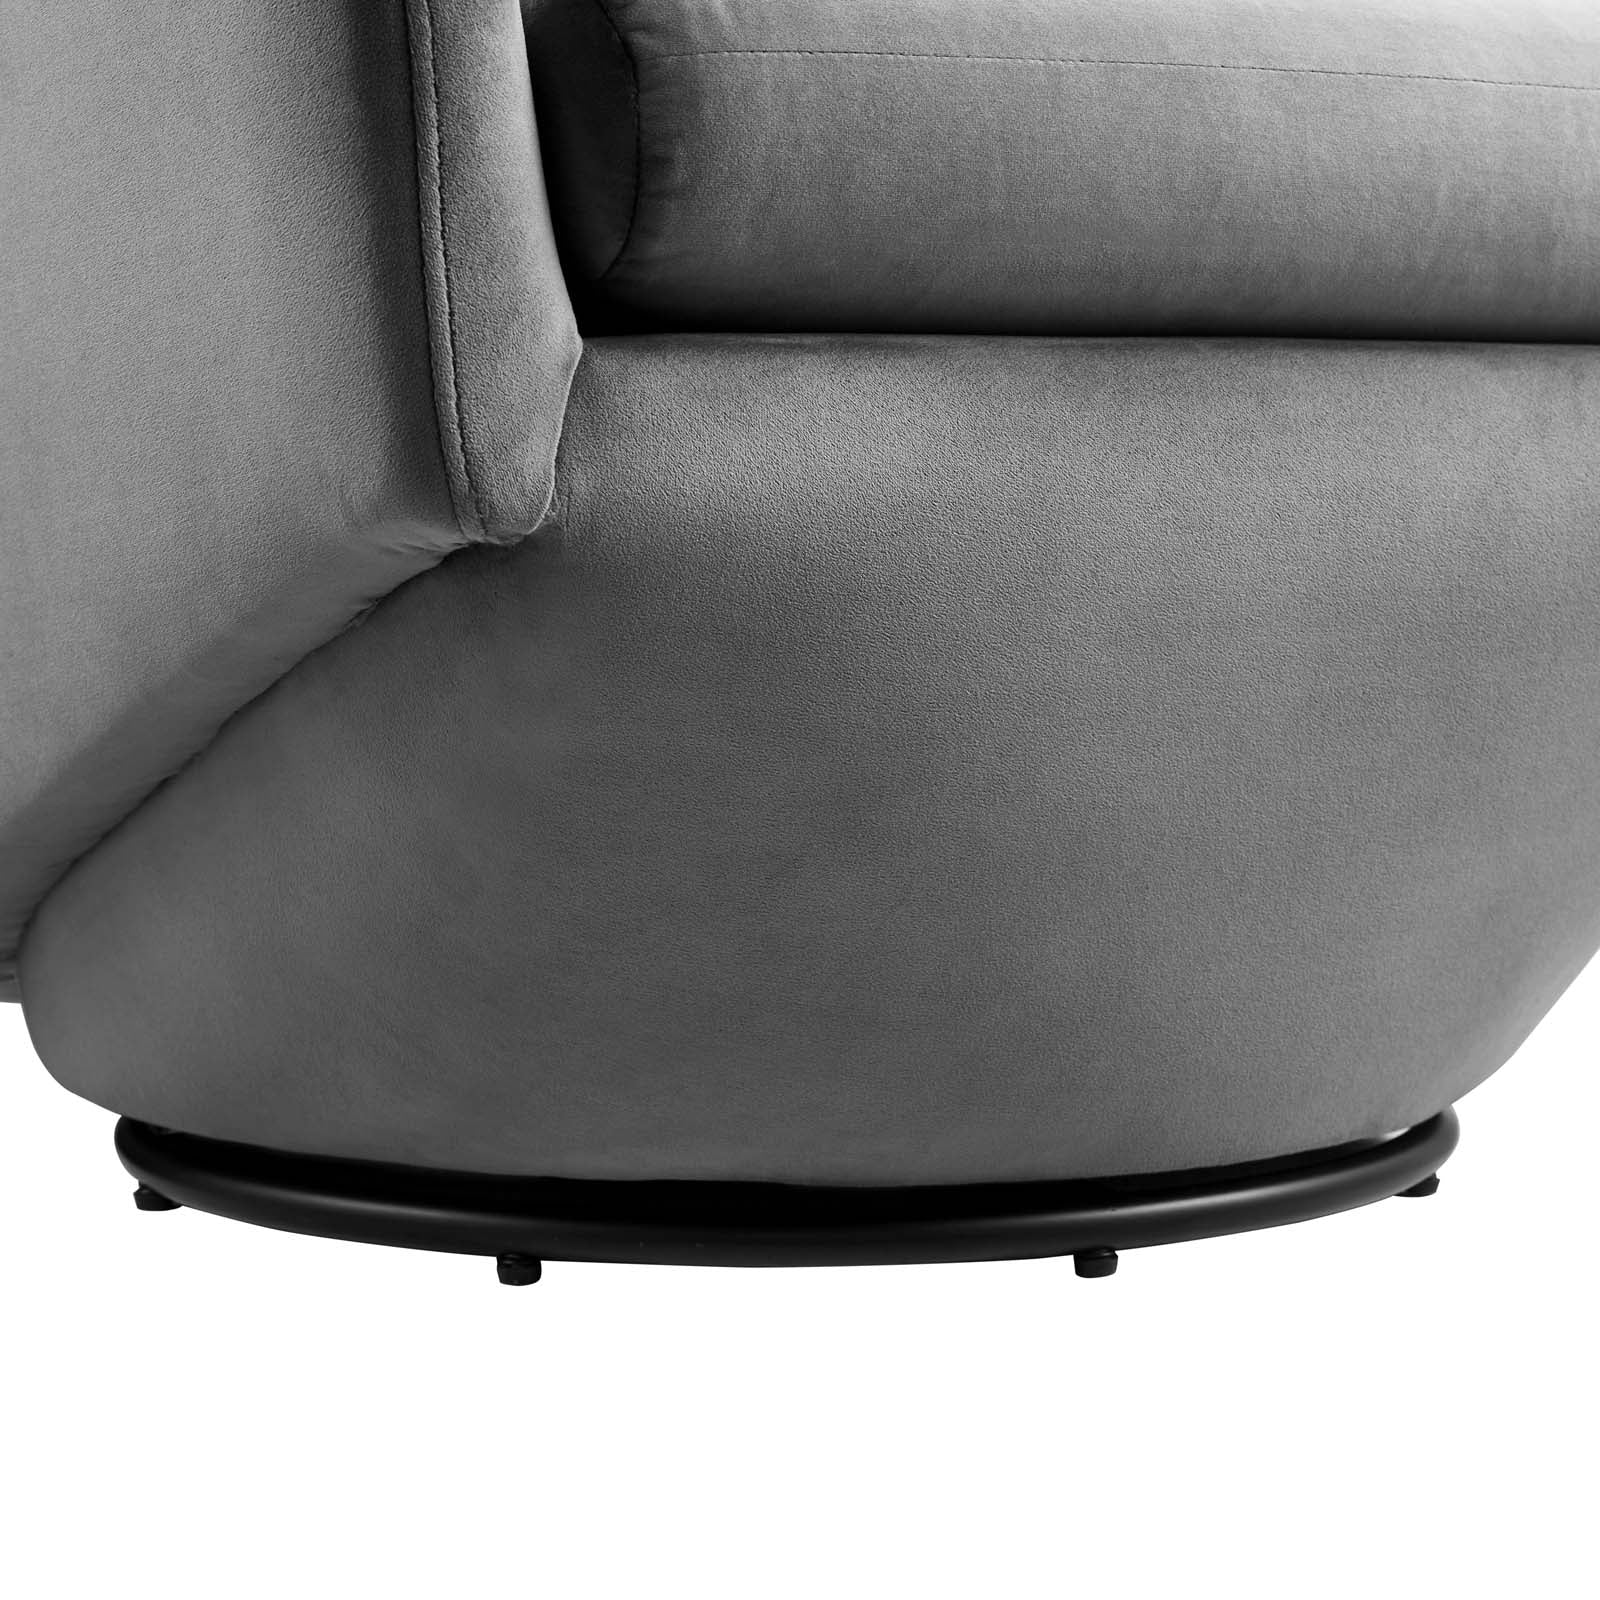 Series Performance Velvet Fabric Swivel Chair - East Shore Modern Home Furnishings